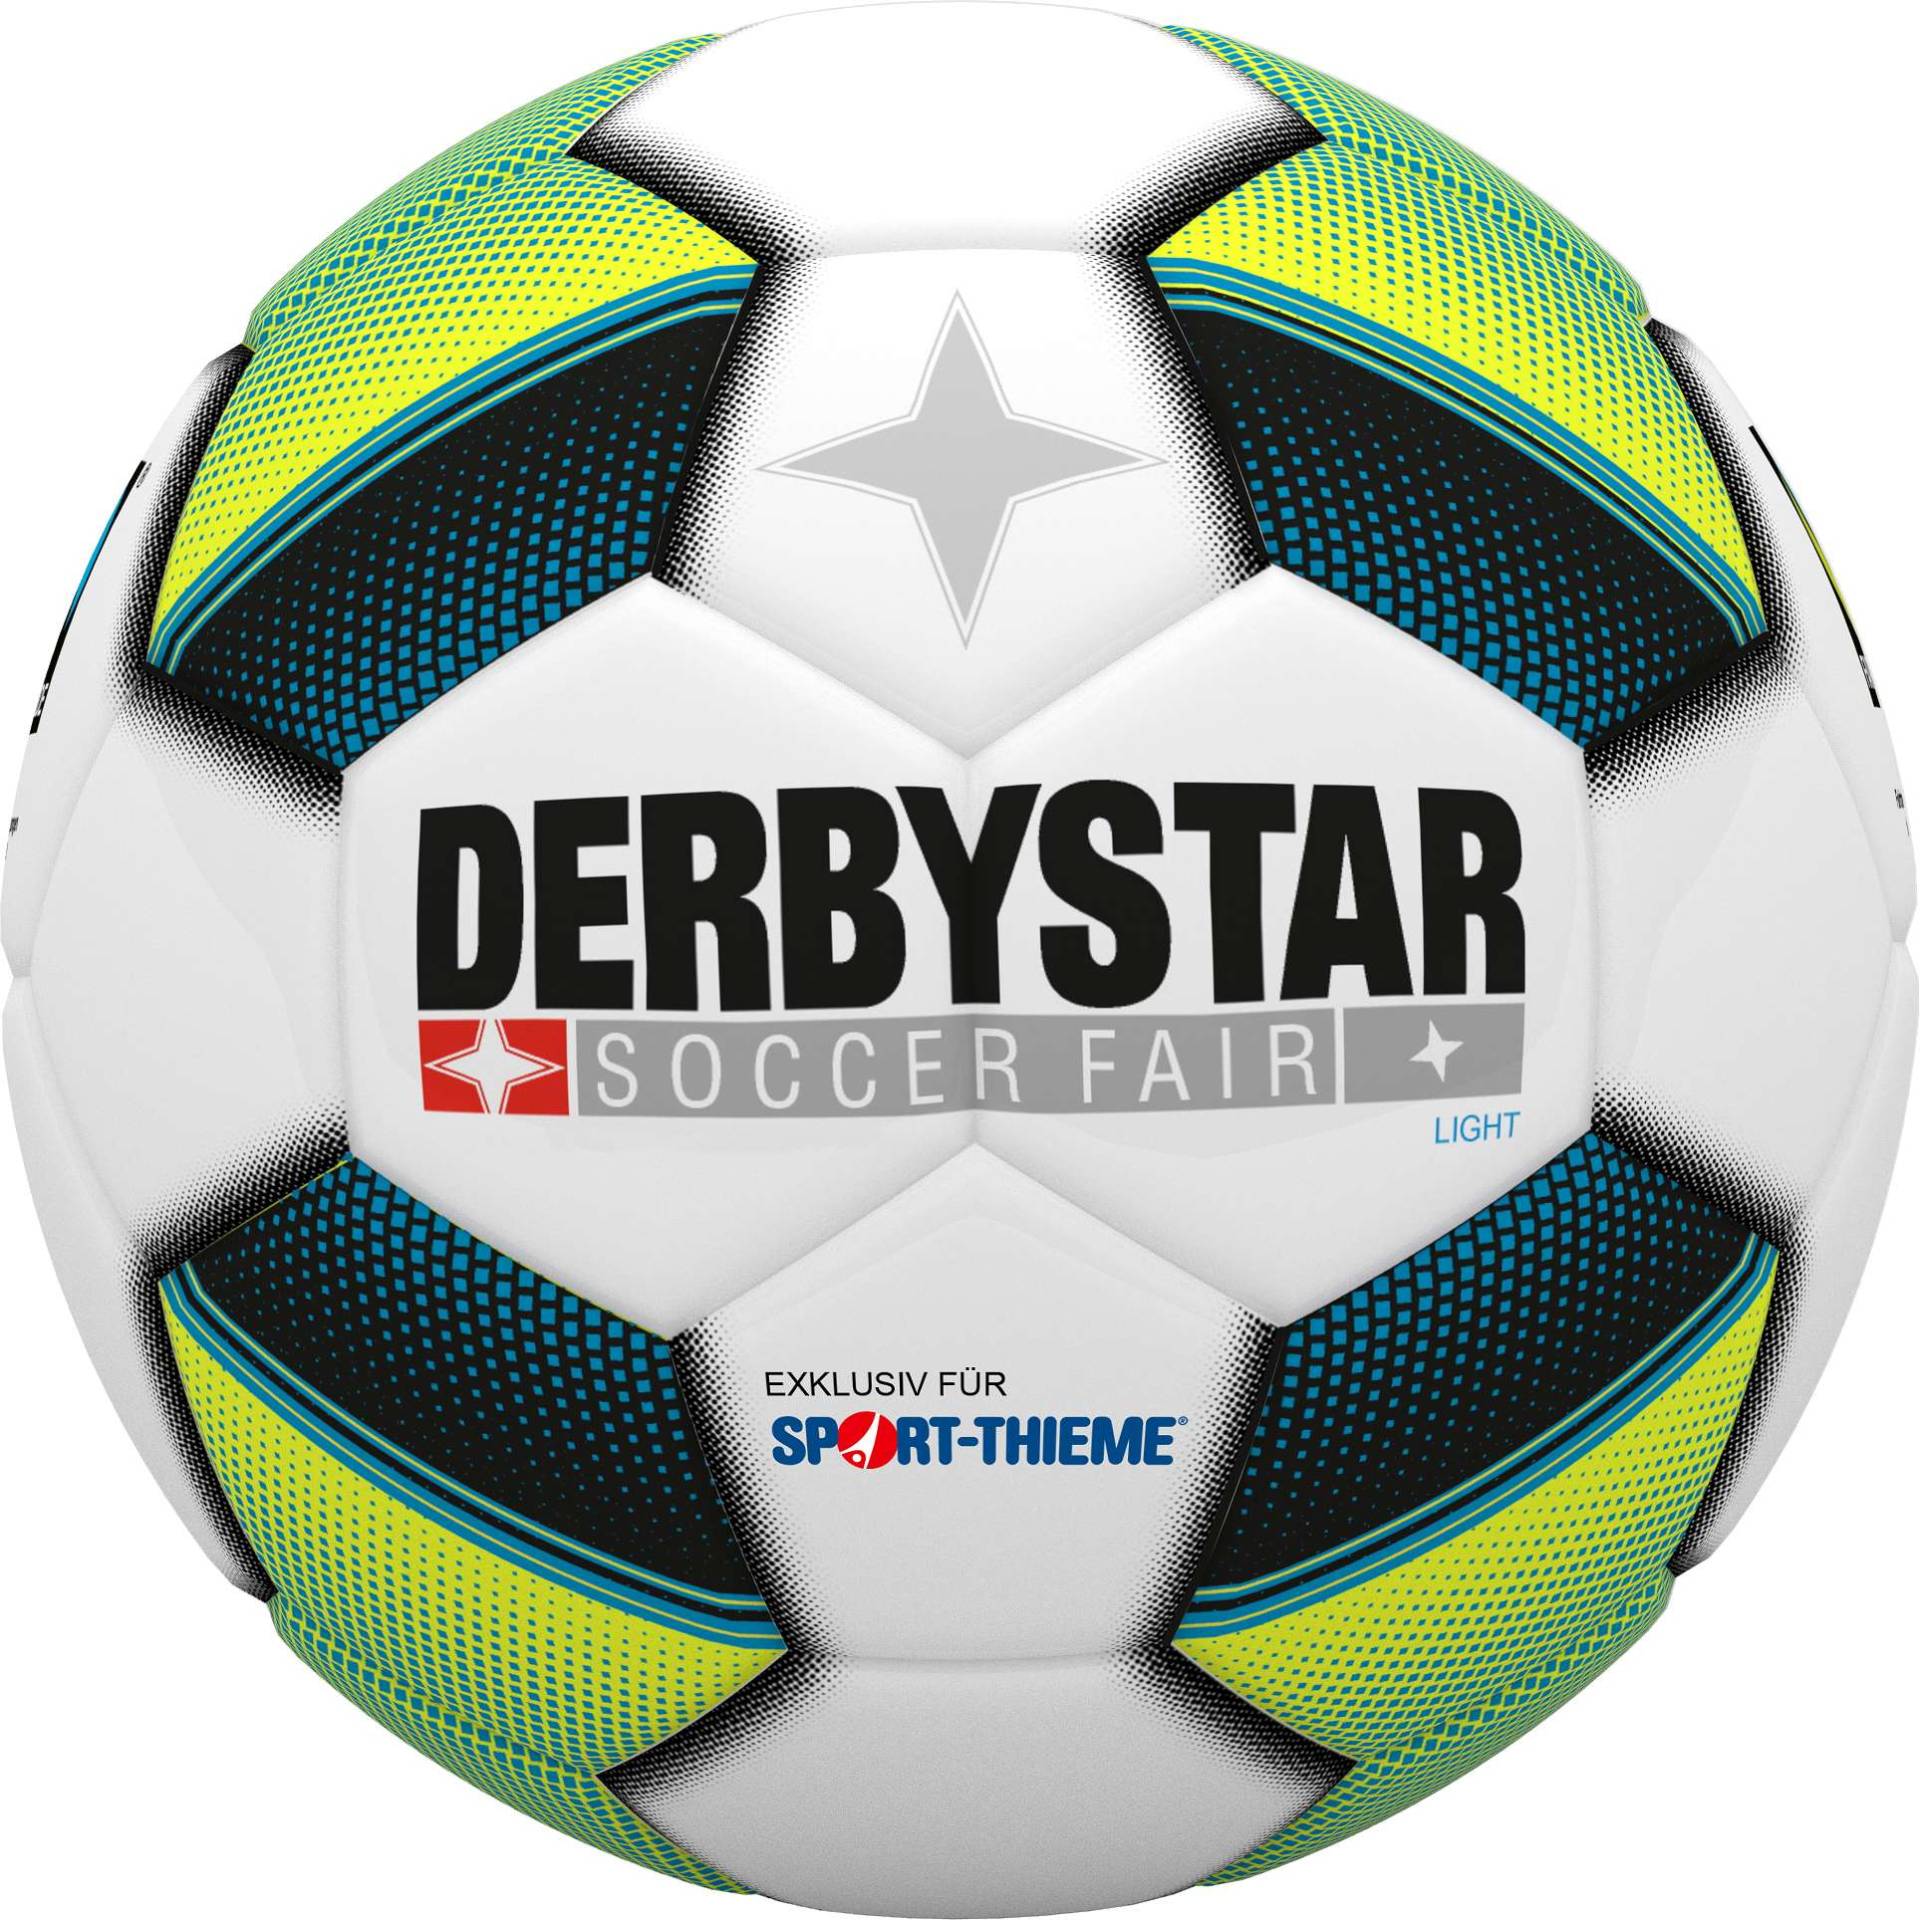 Derbystar Fußball "Soccer Fair Light" von Derbystar